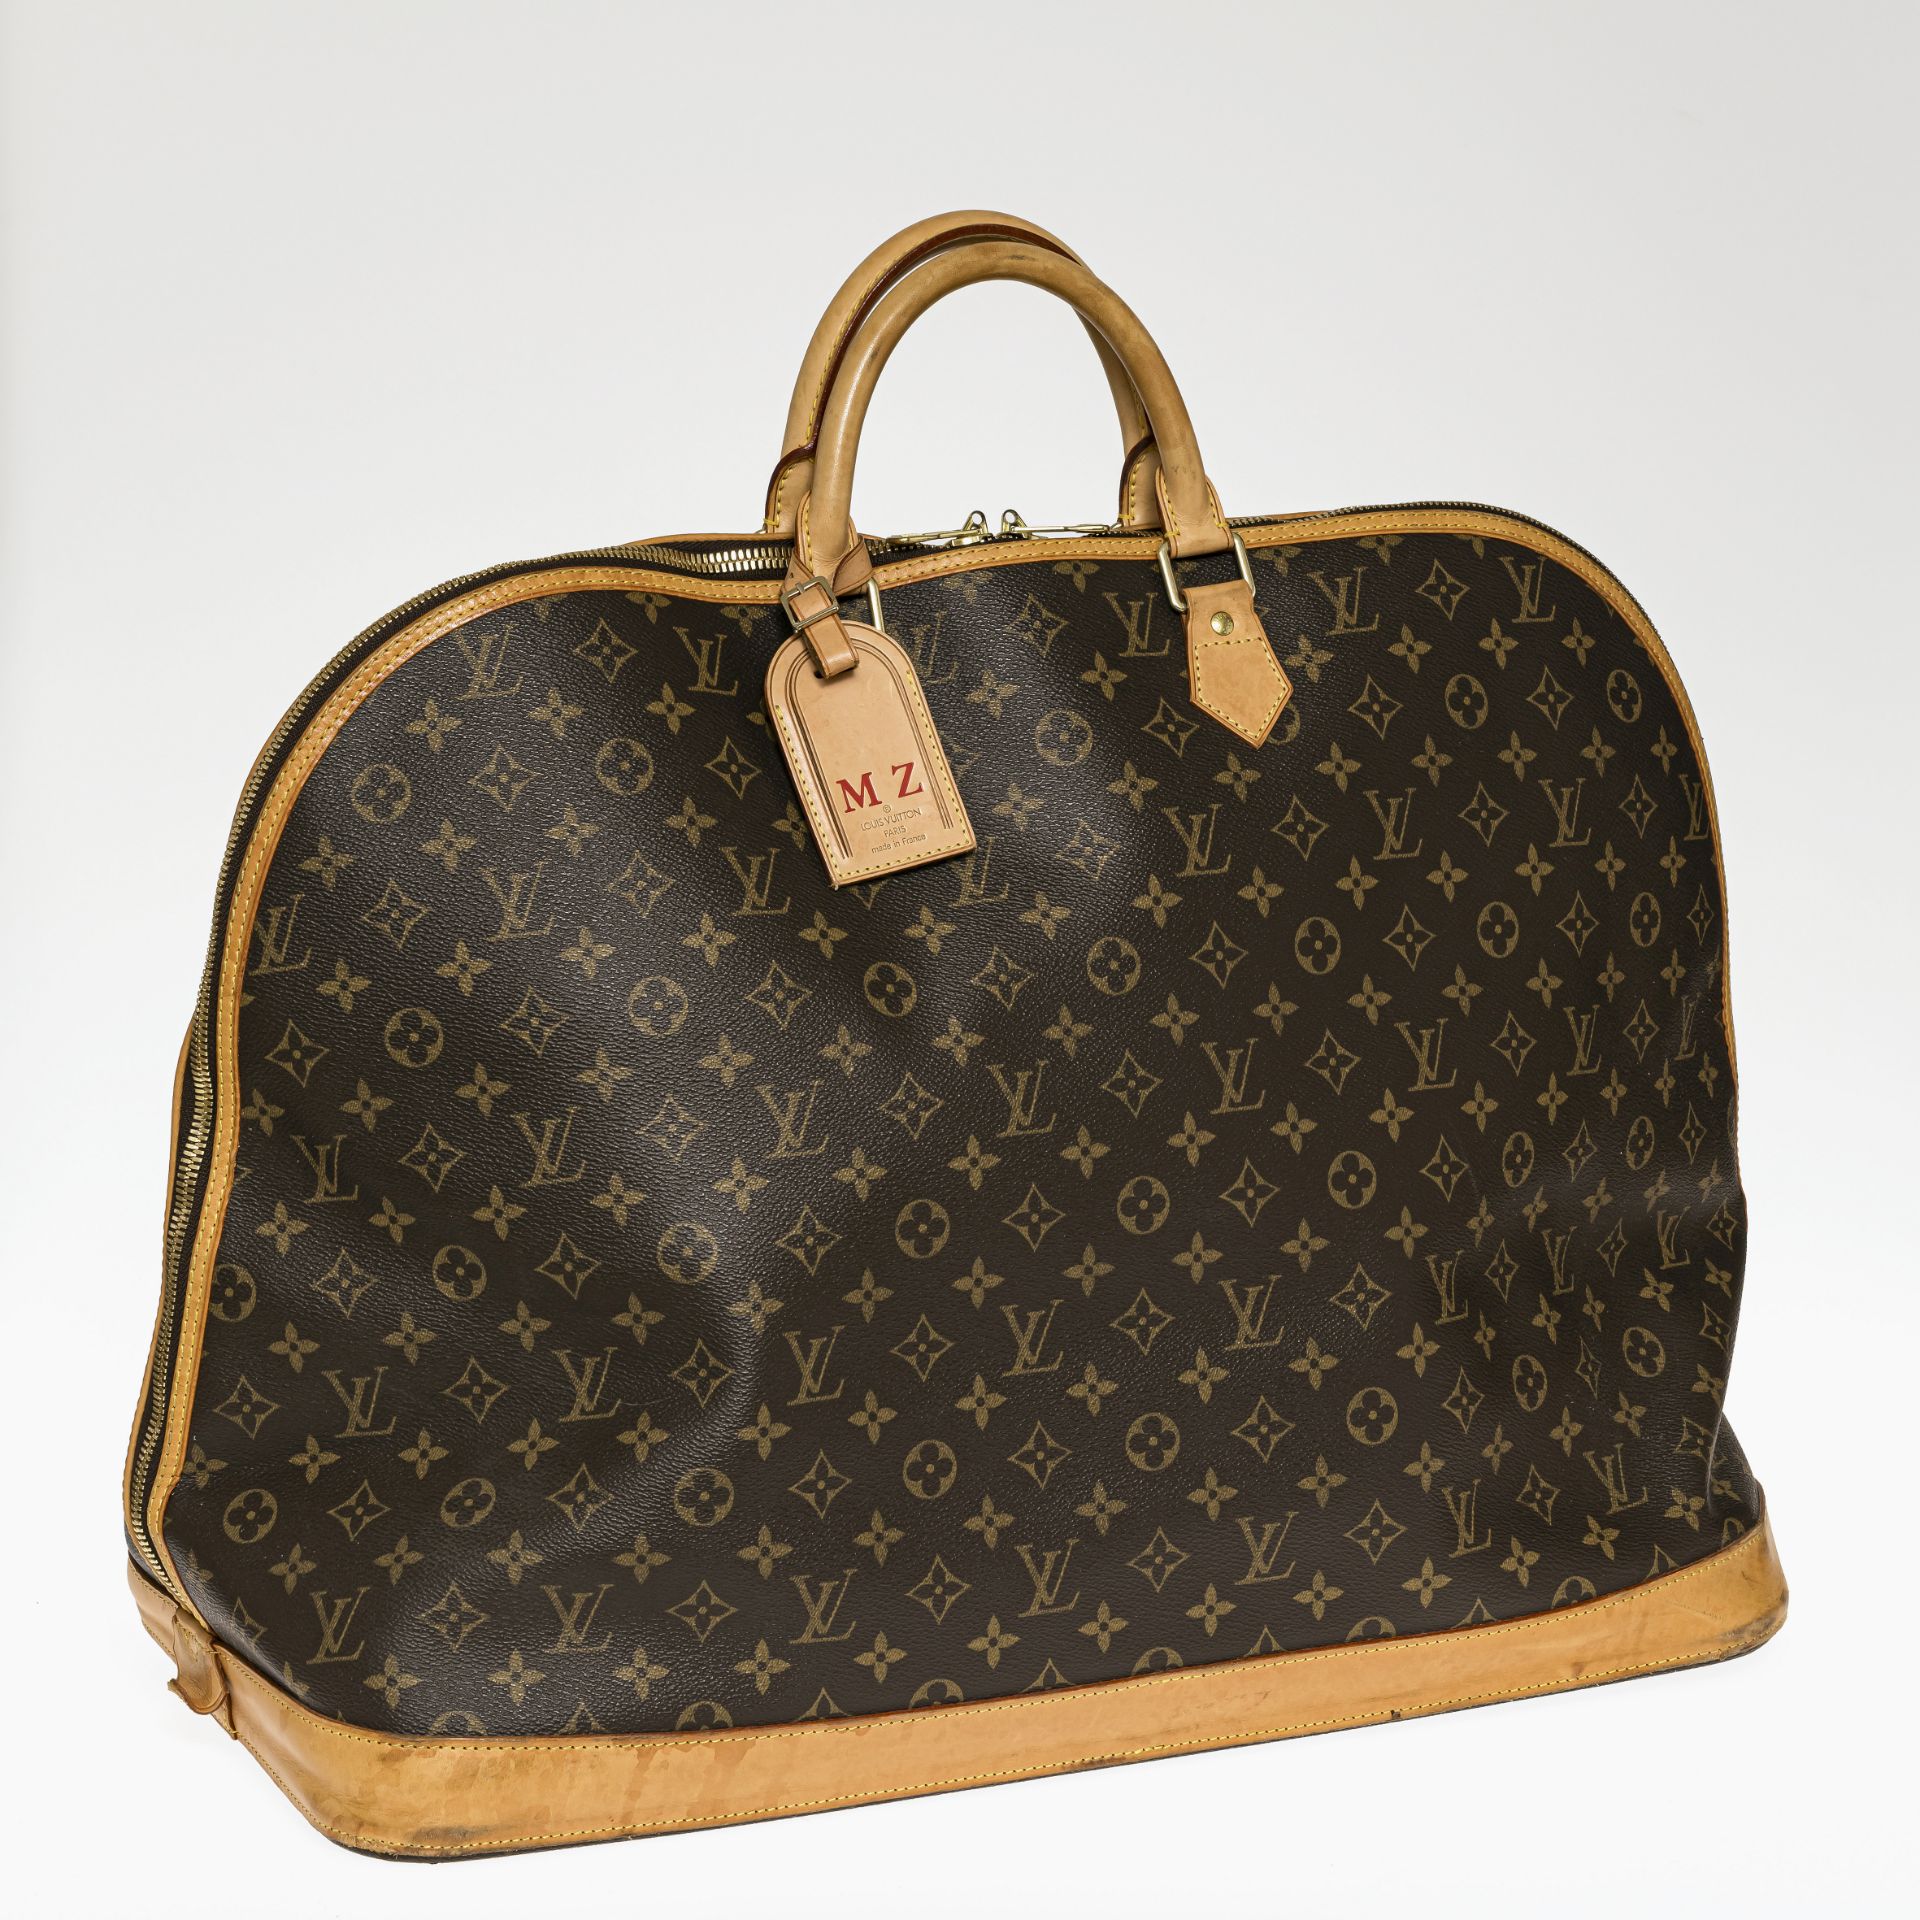 Reisetasche "Boston Bag Alma Voyage" - Louis Vuitton, Paris